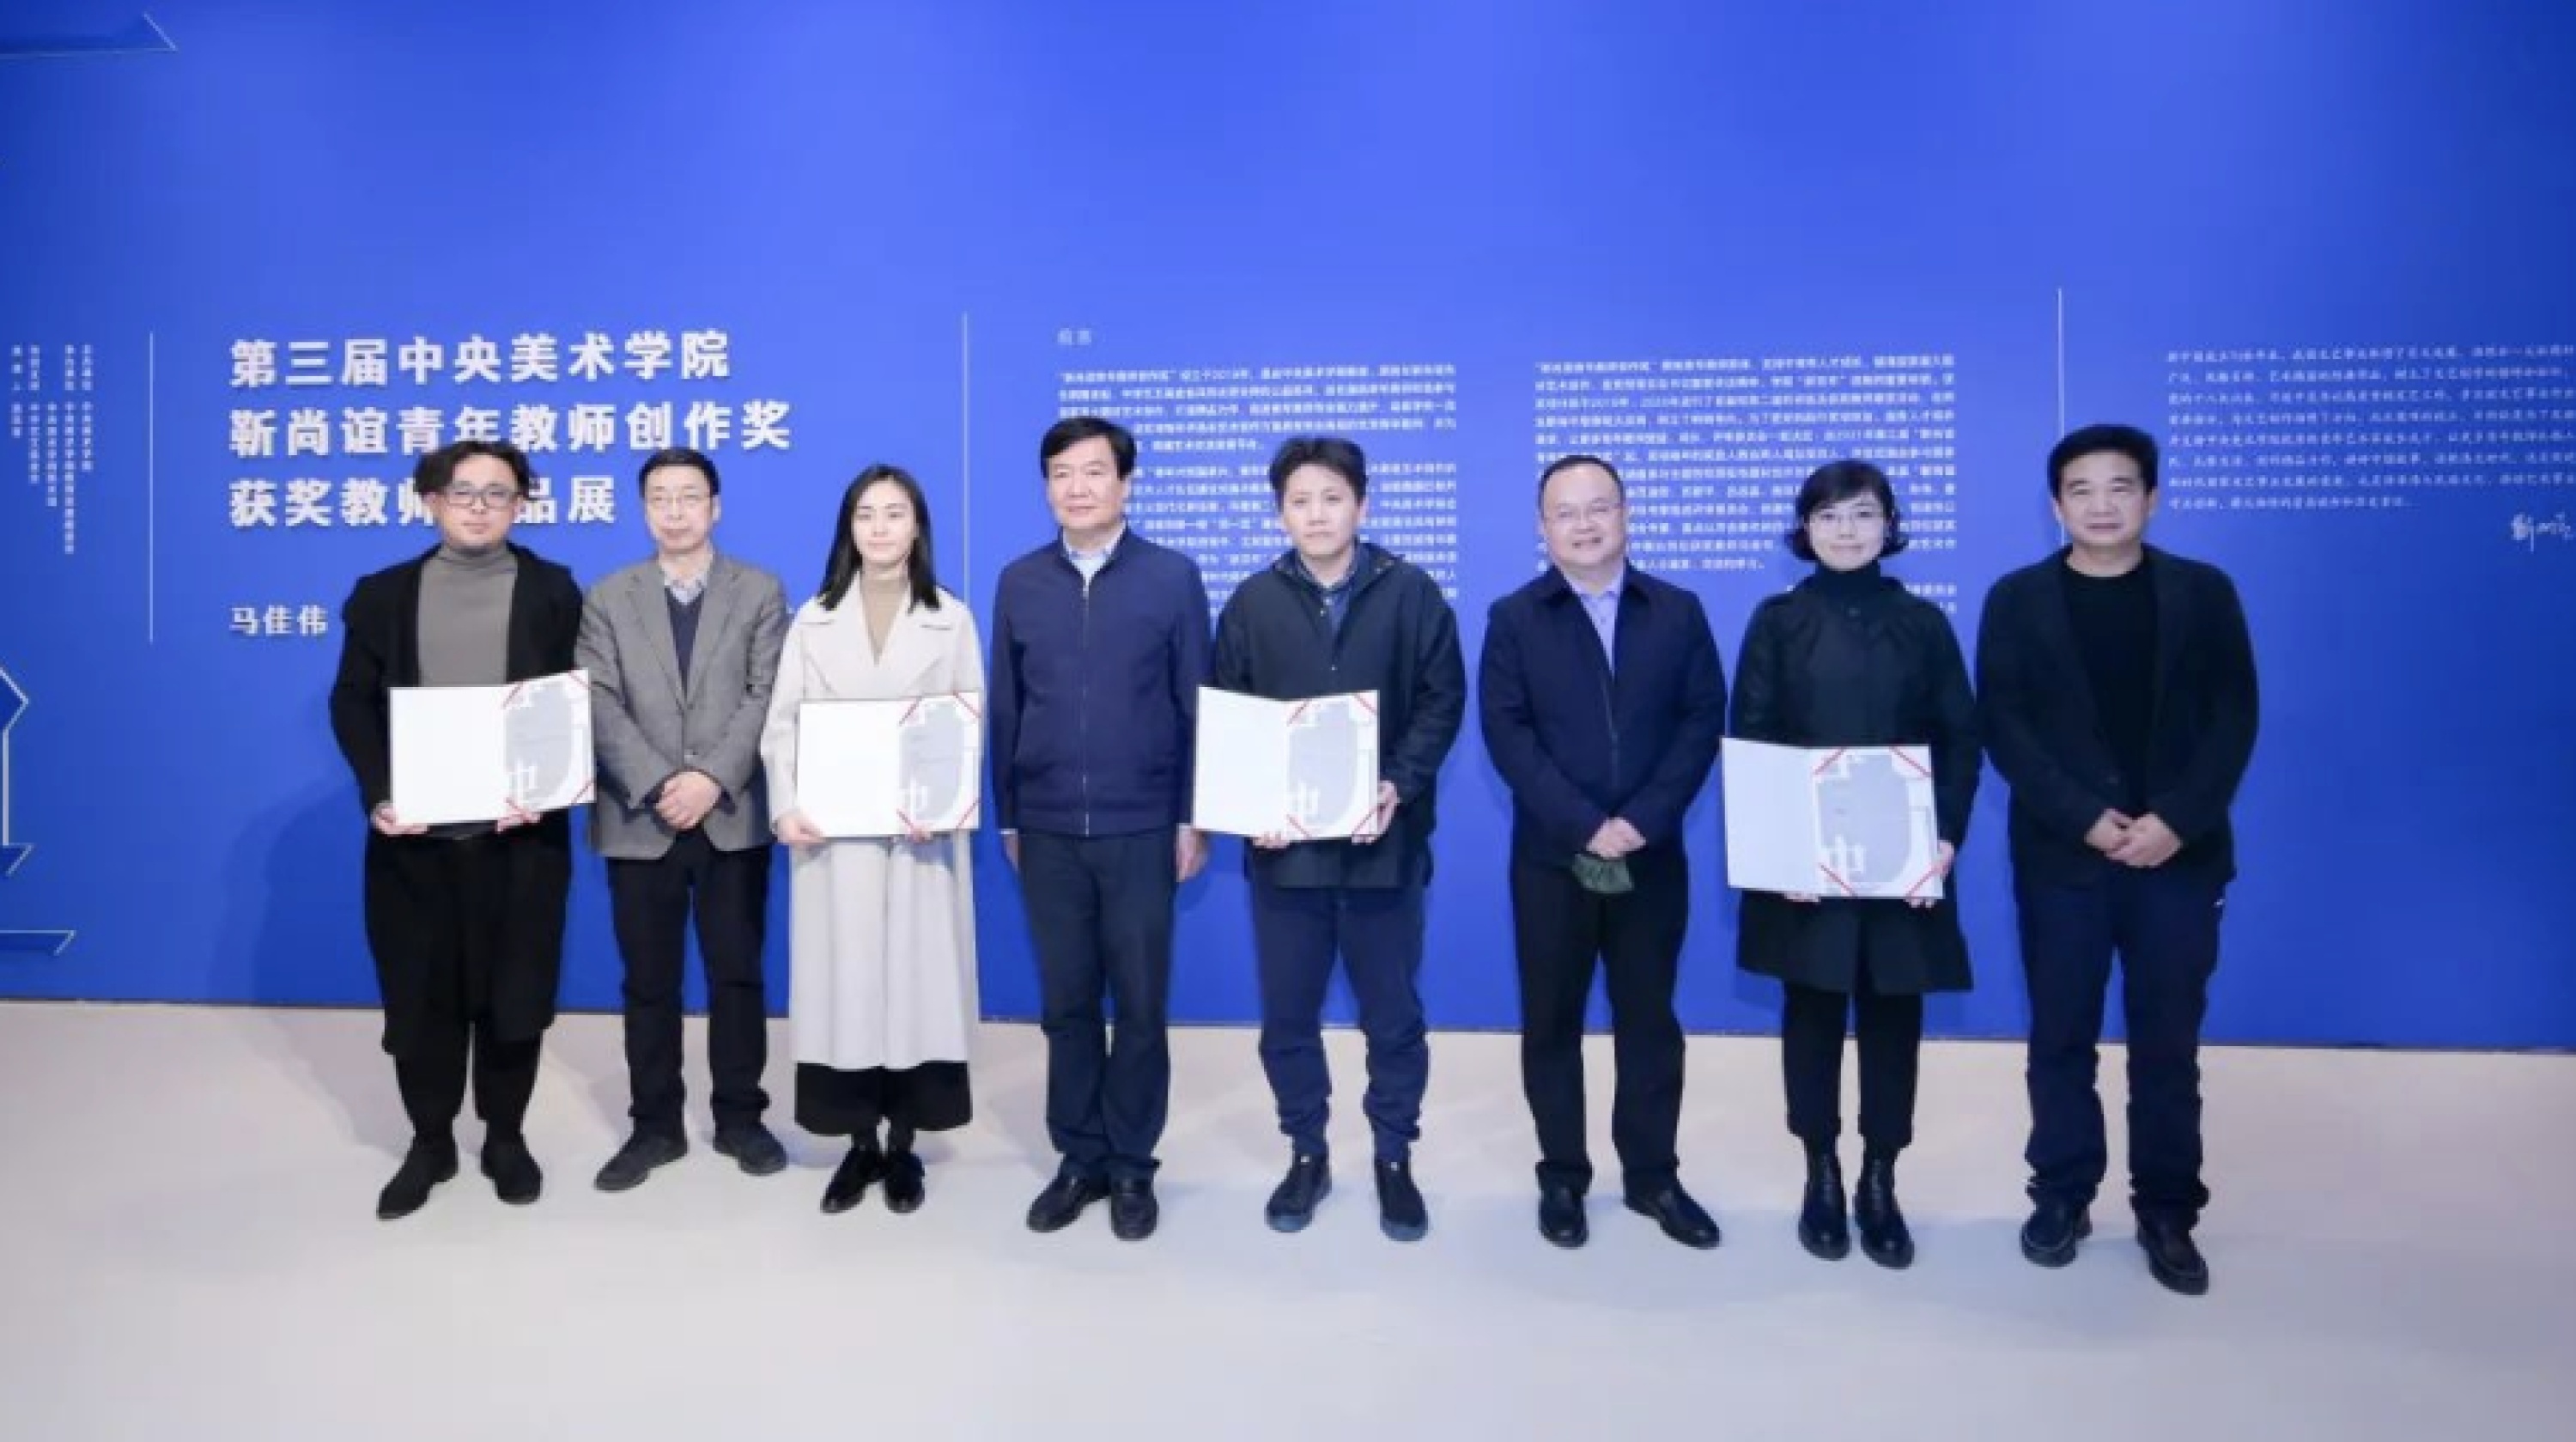 王子耕获第三届中央美术学院“靳尚谊青年教师创作奖”